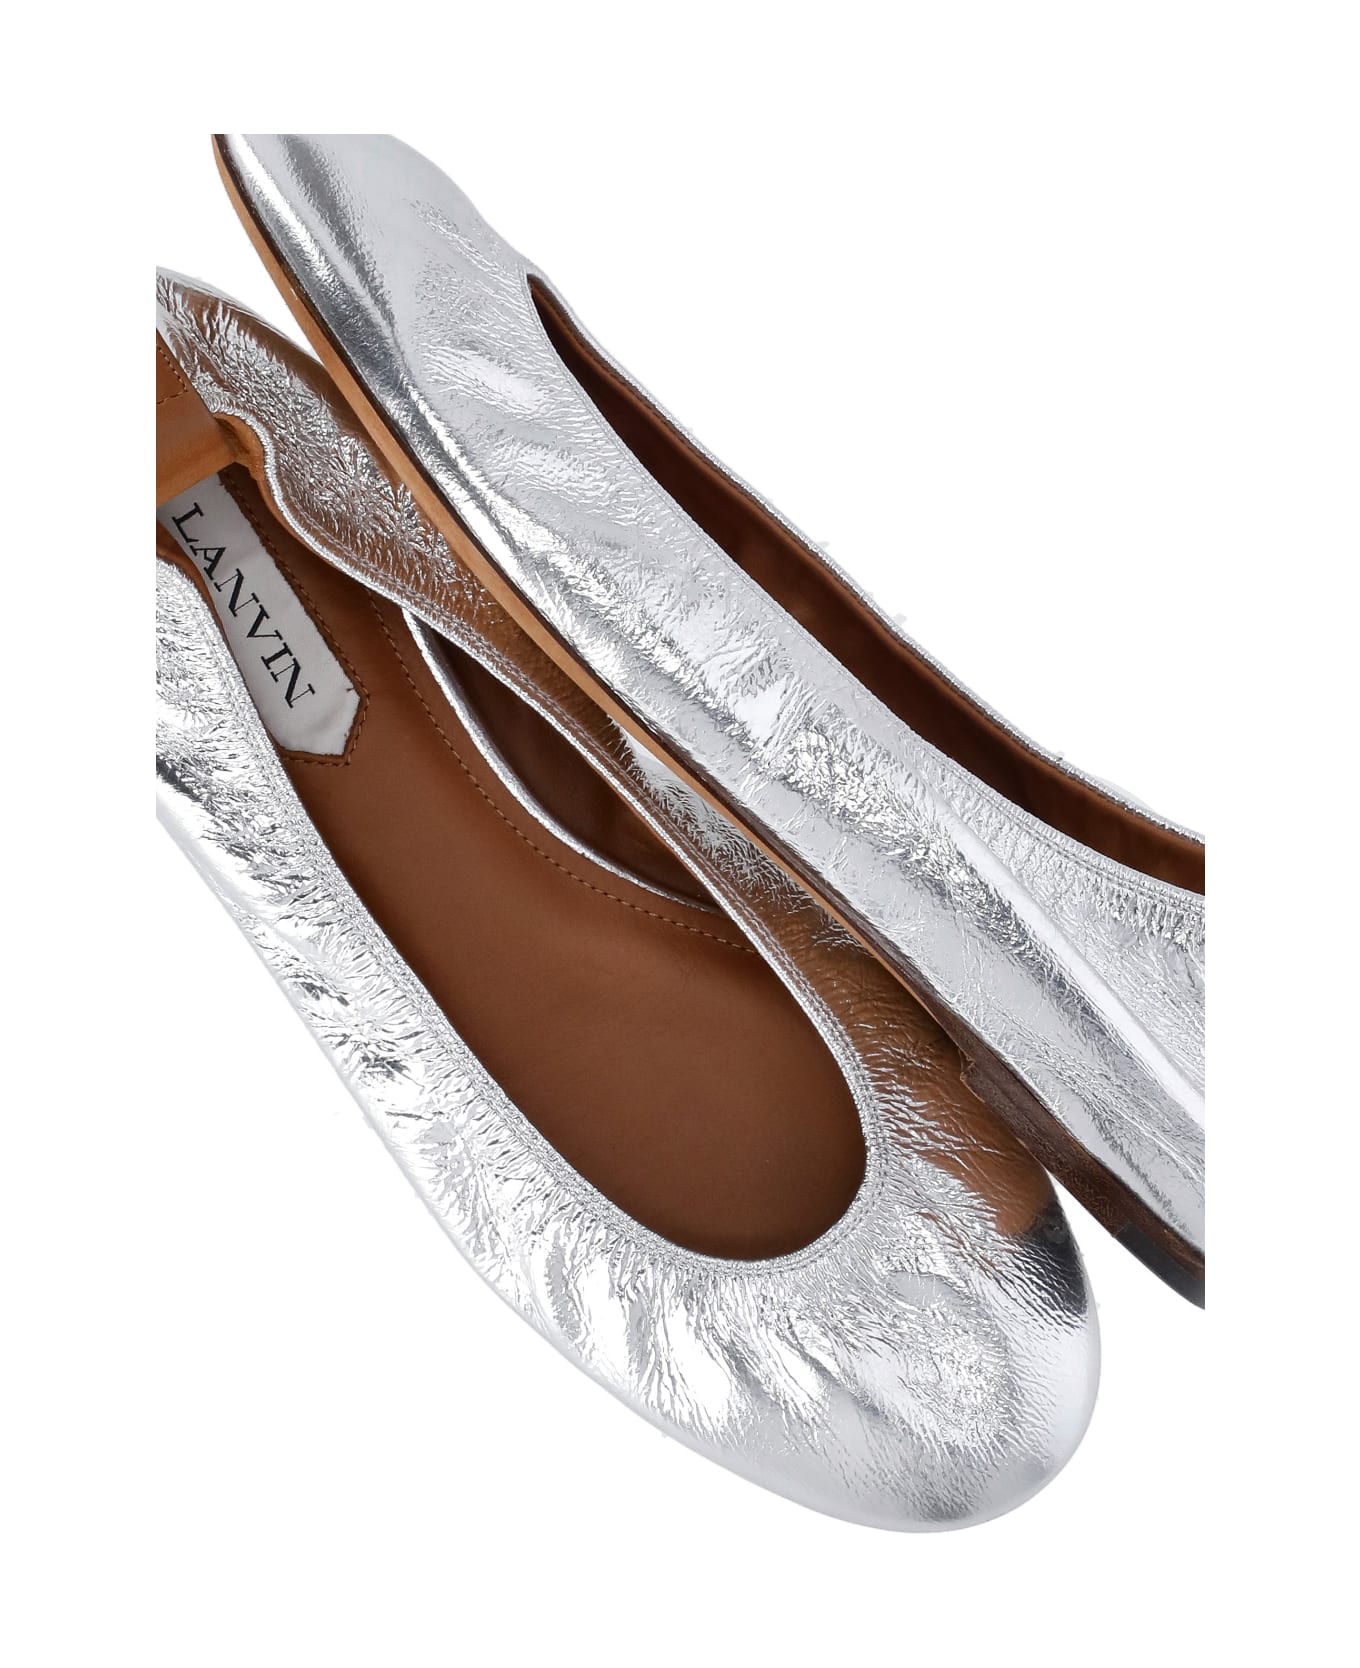 Lanvin Leather Ballet Shoes - Silver